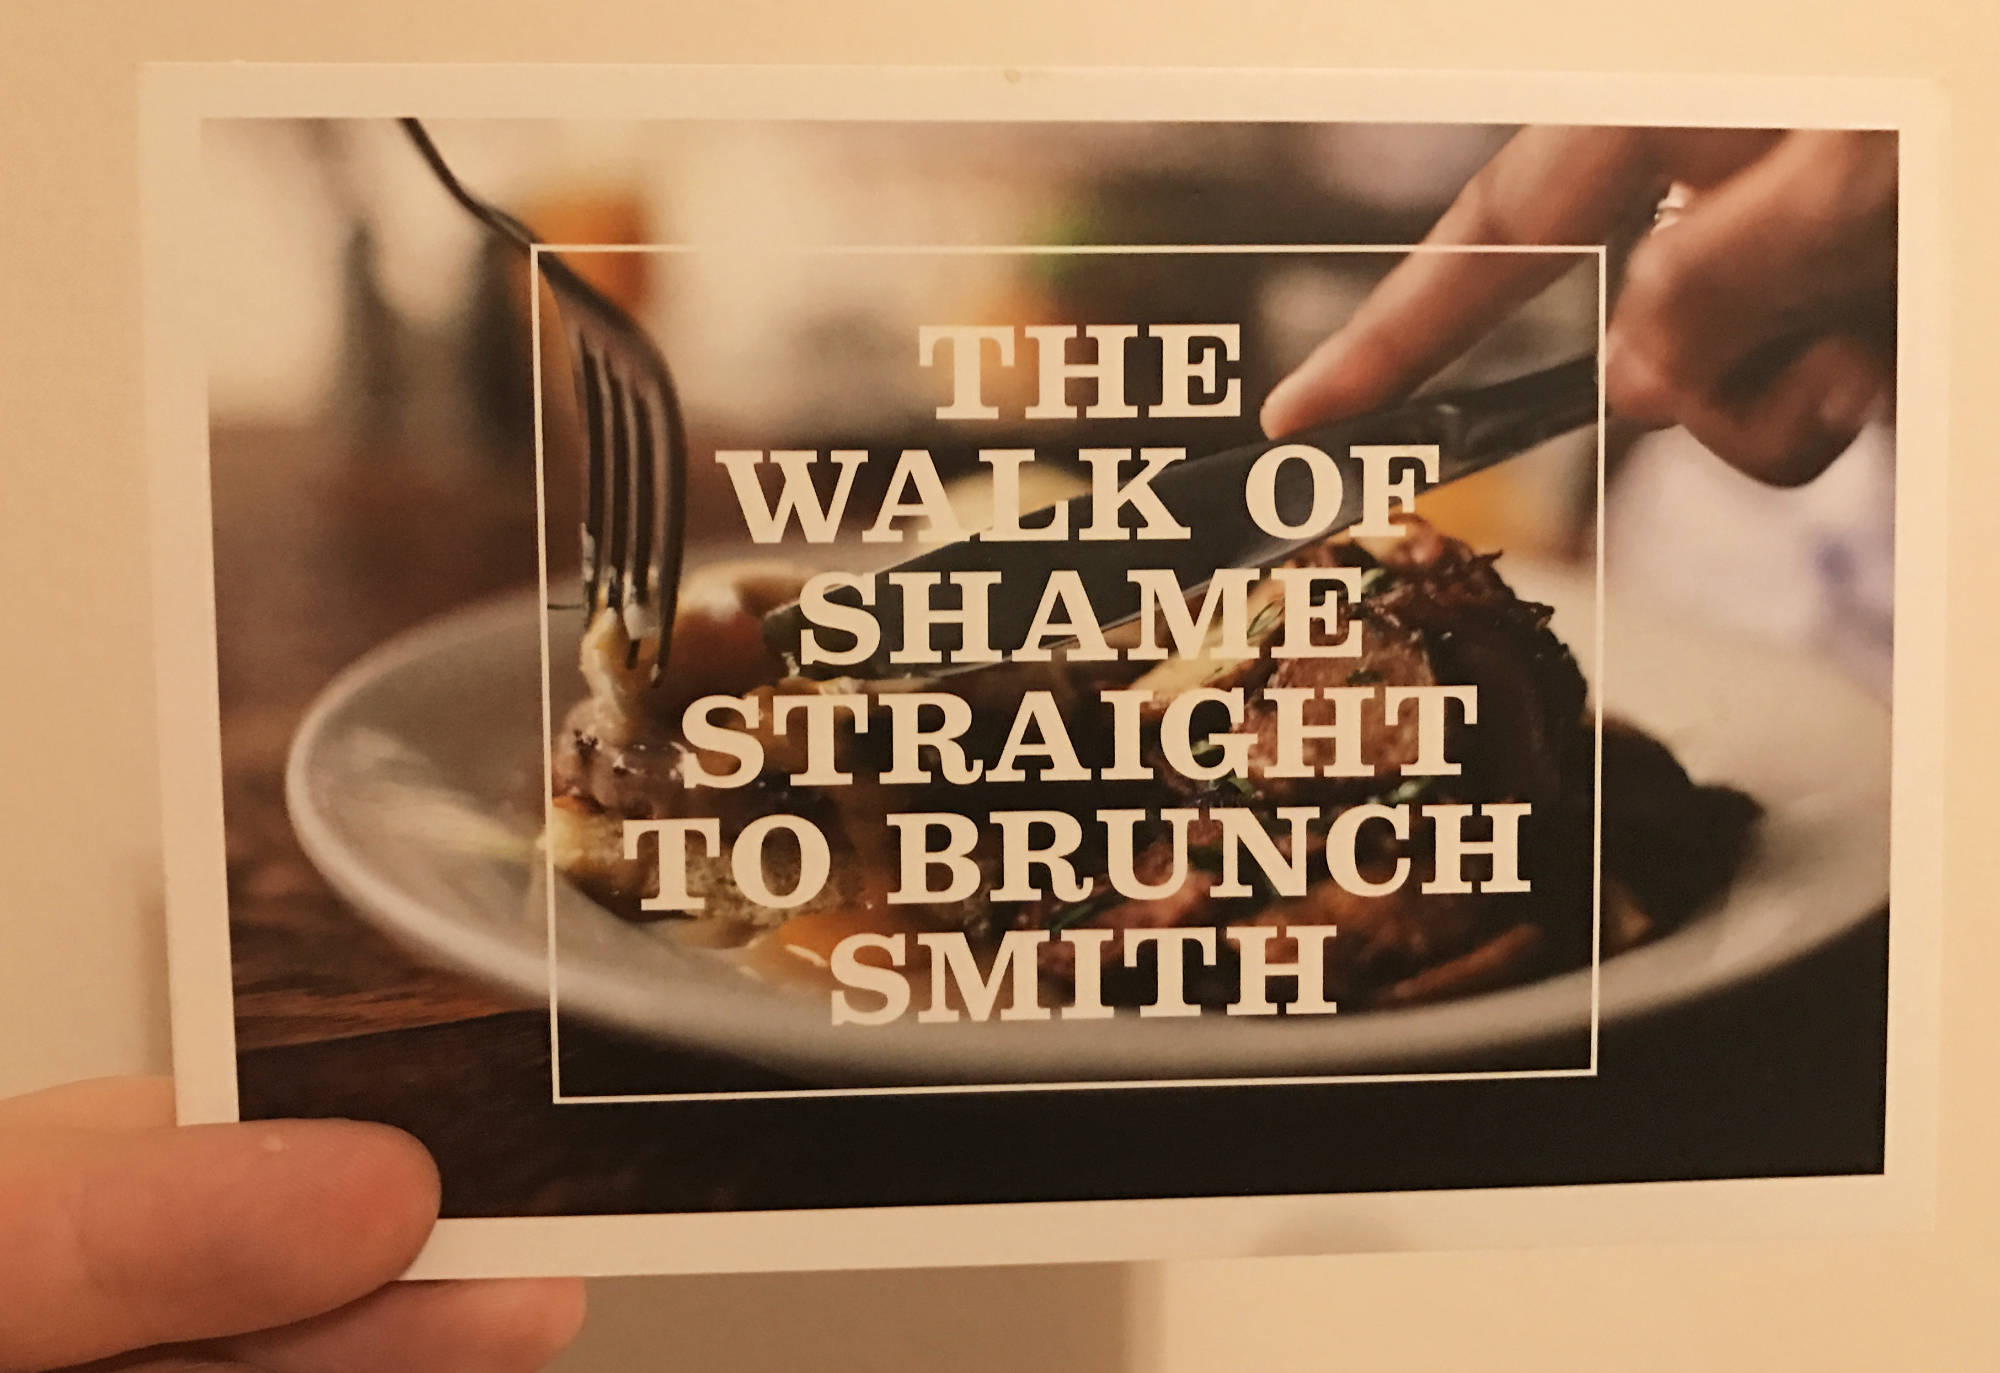 Местный ресторан Smith, обыгрывая шутку про "walk of shame", приглашает всех приезжих девушек на поздний завтрак.